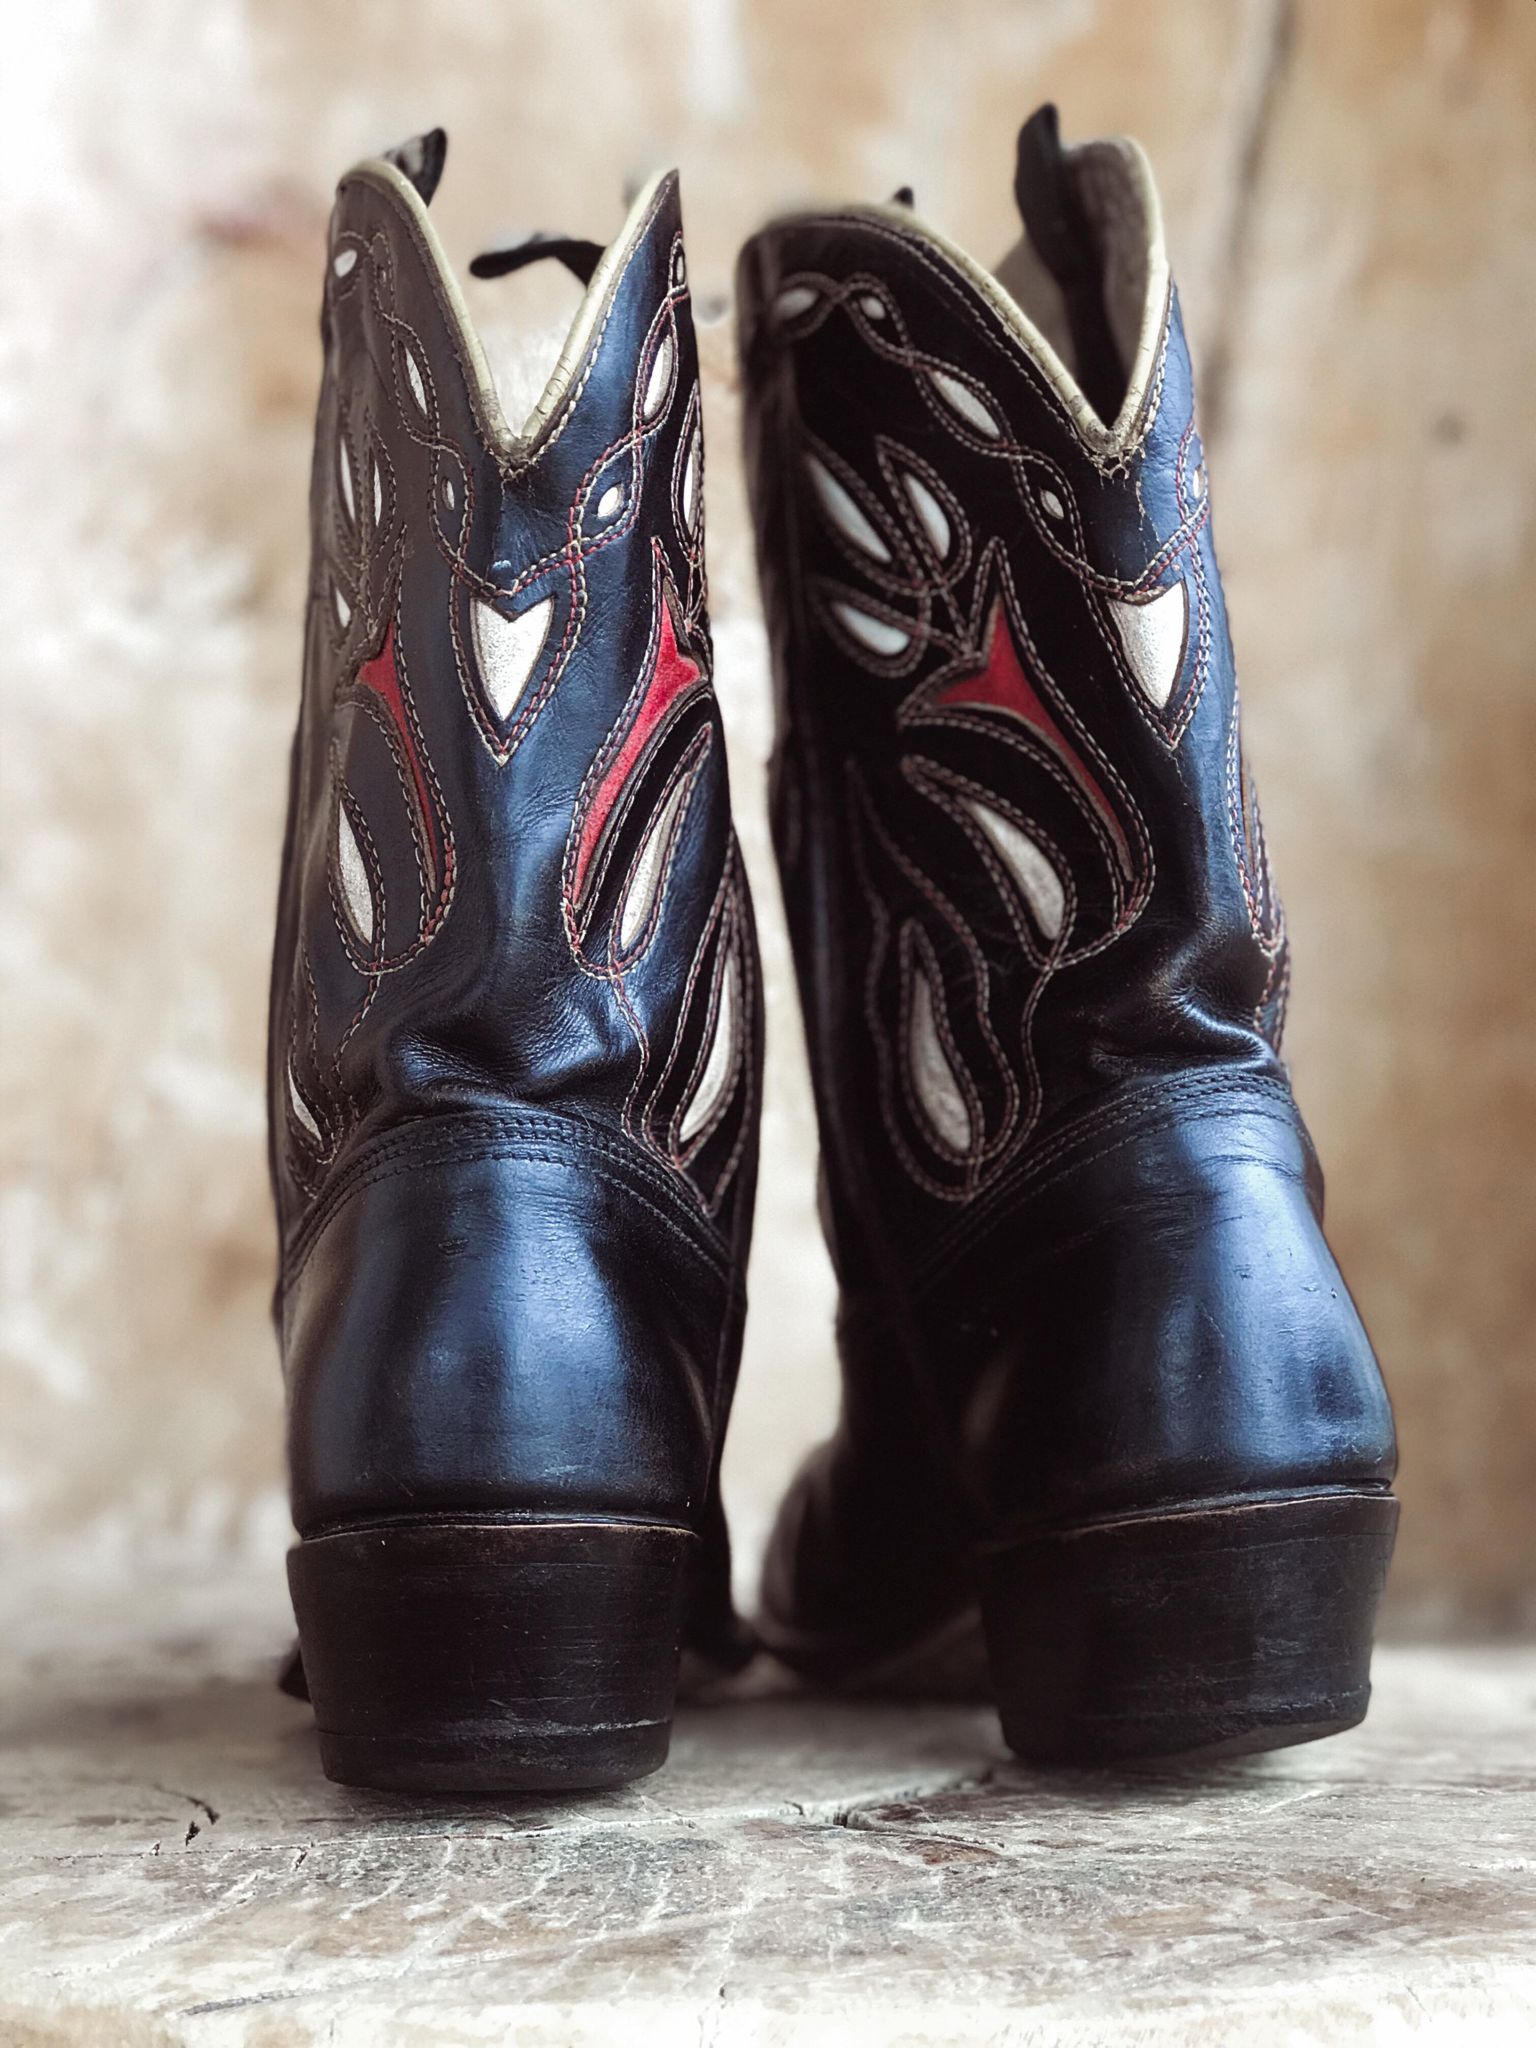 1940's Acme Cowboy Boots